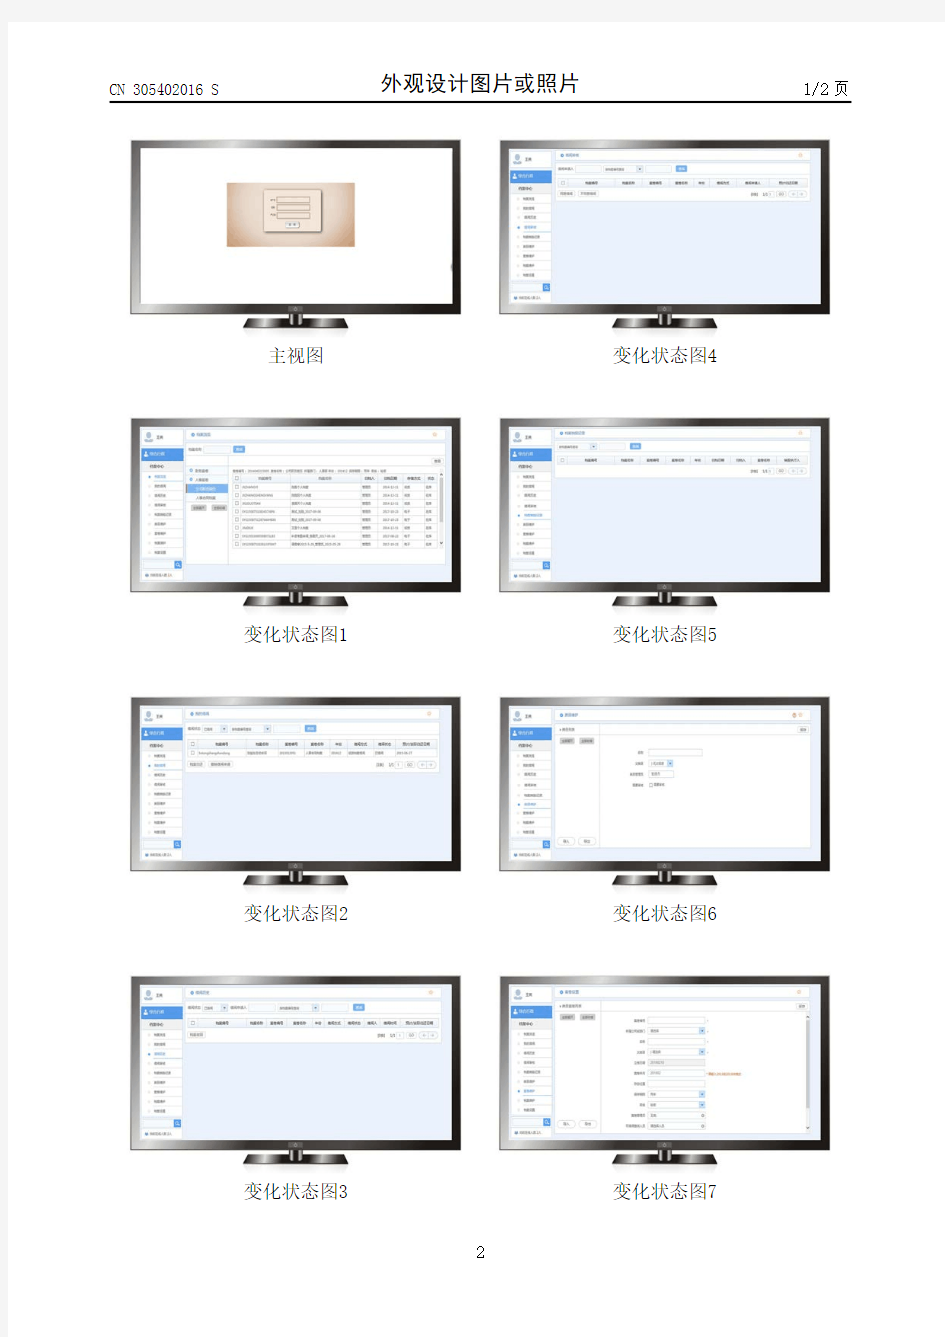 【CN305402016S】带图形用户界面的电脑(档案管理系统)【专利】